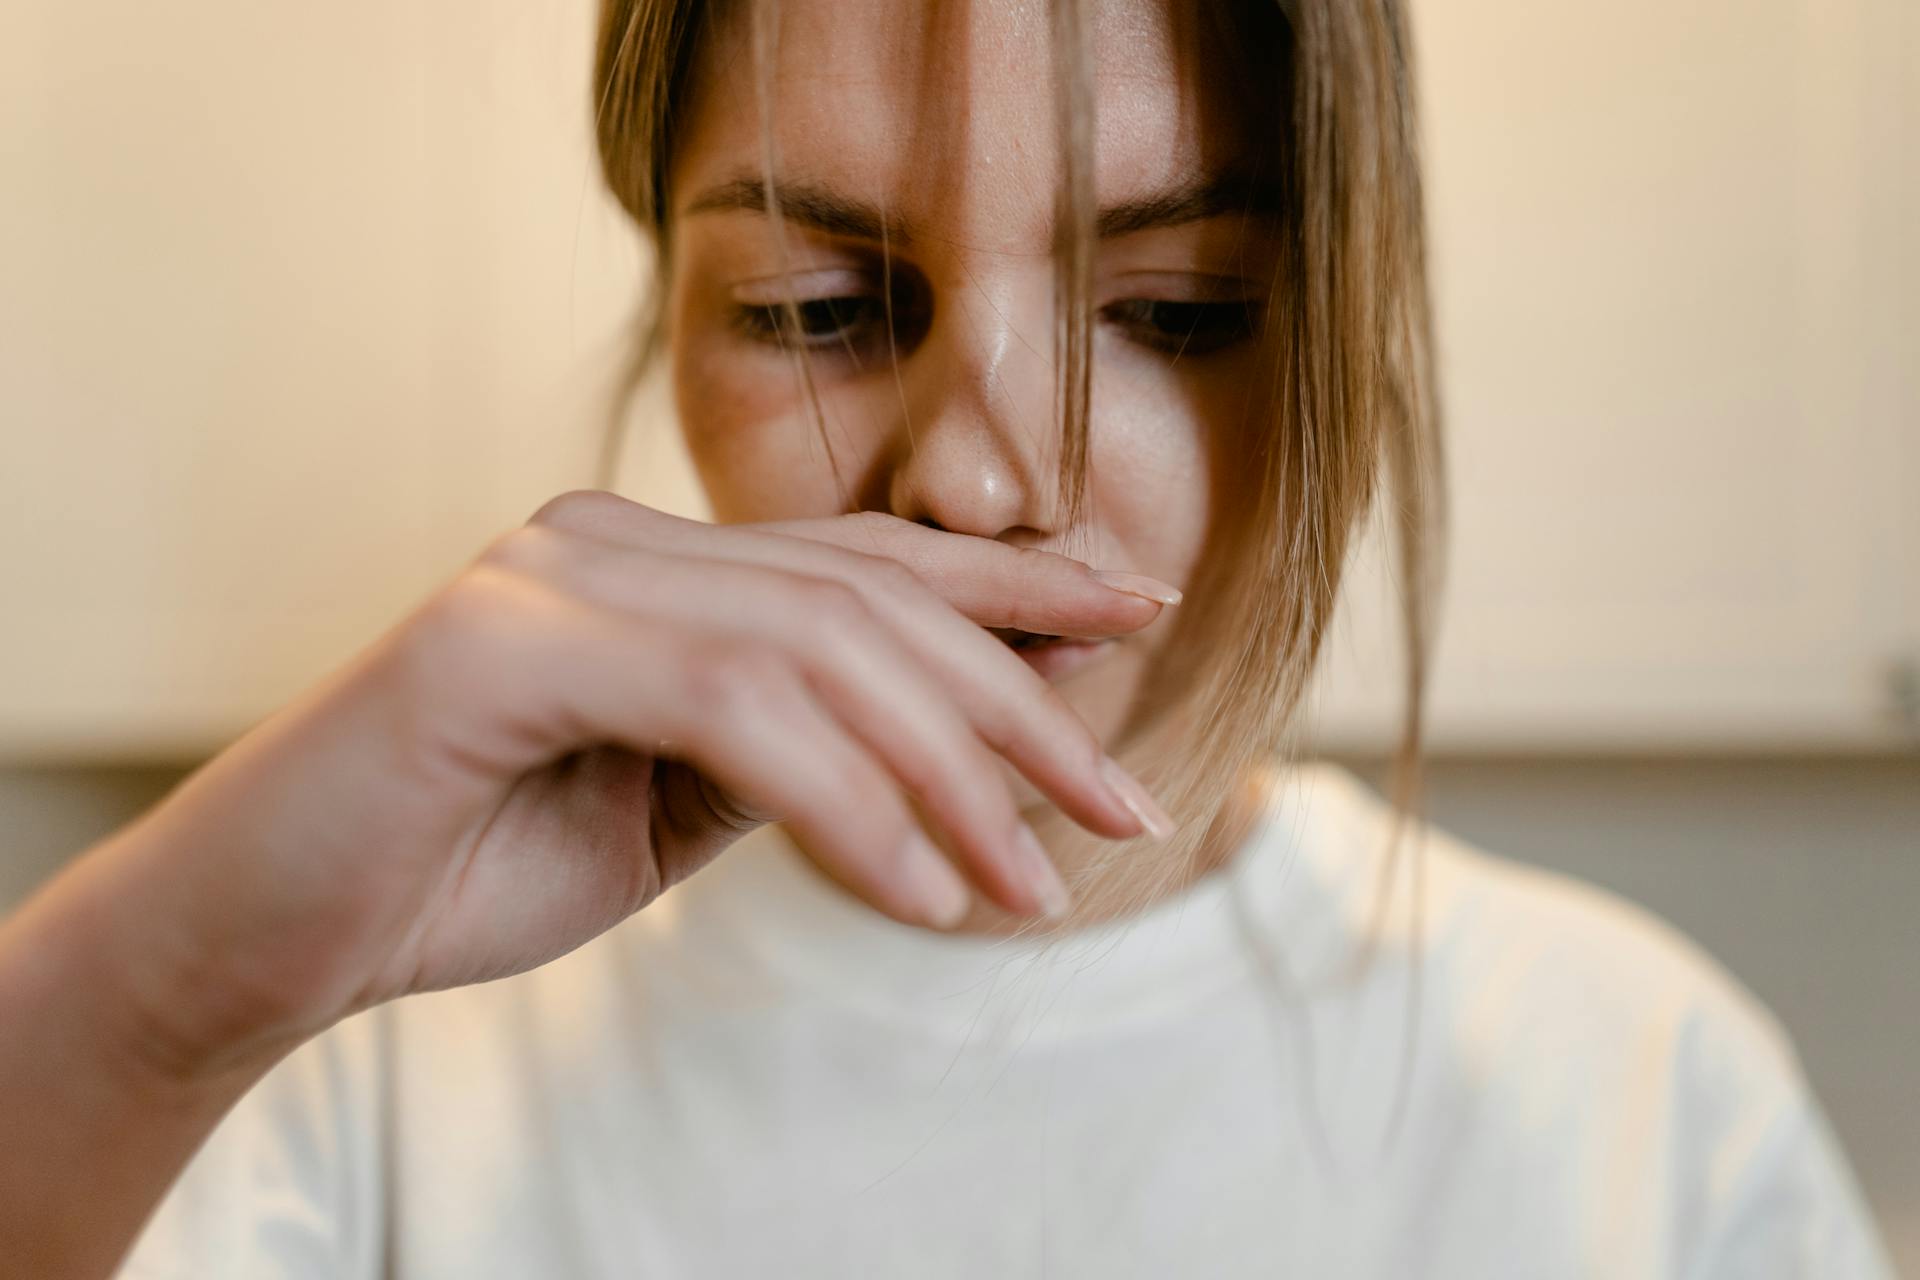 Una mujer sujetándose la cara | Fuente: Pexels